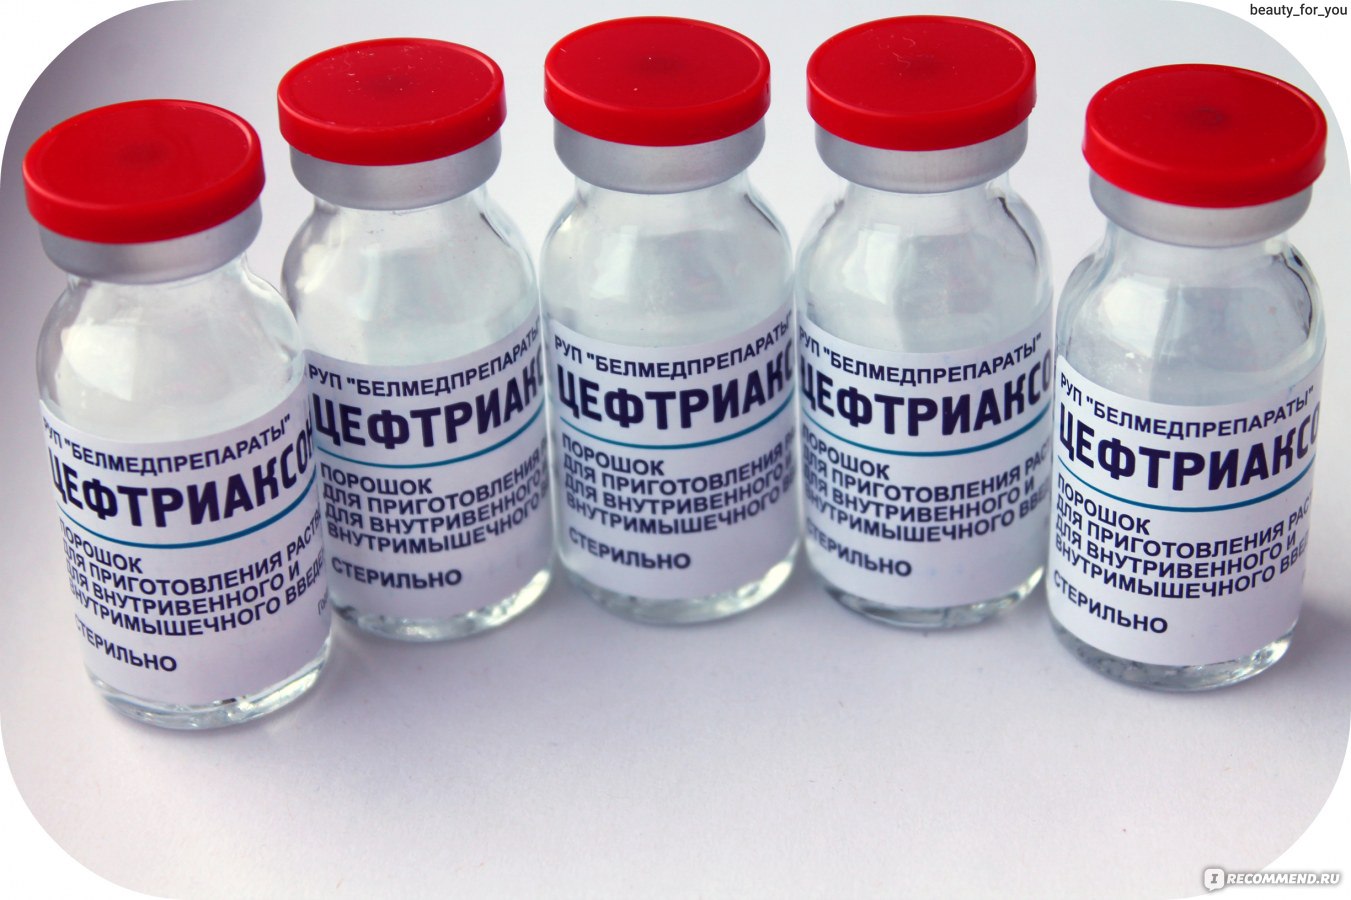 Антибиотики пенициллины цефалоспорины